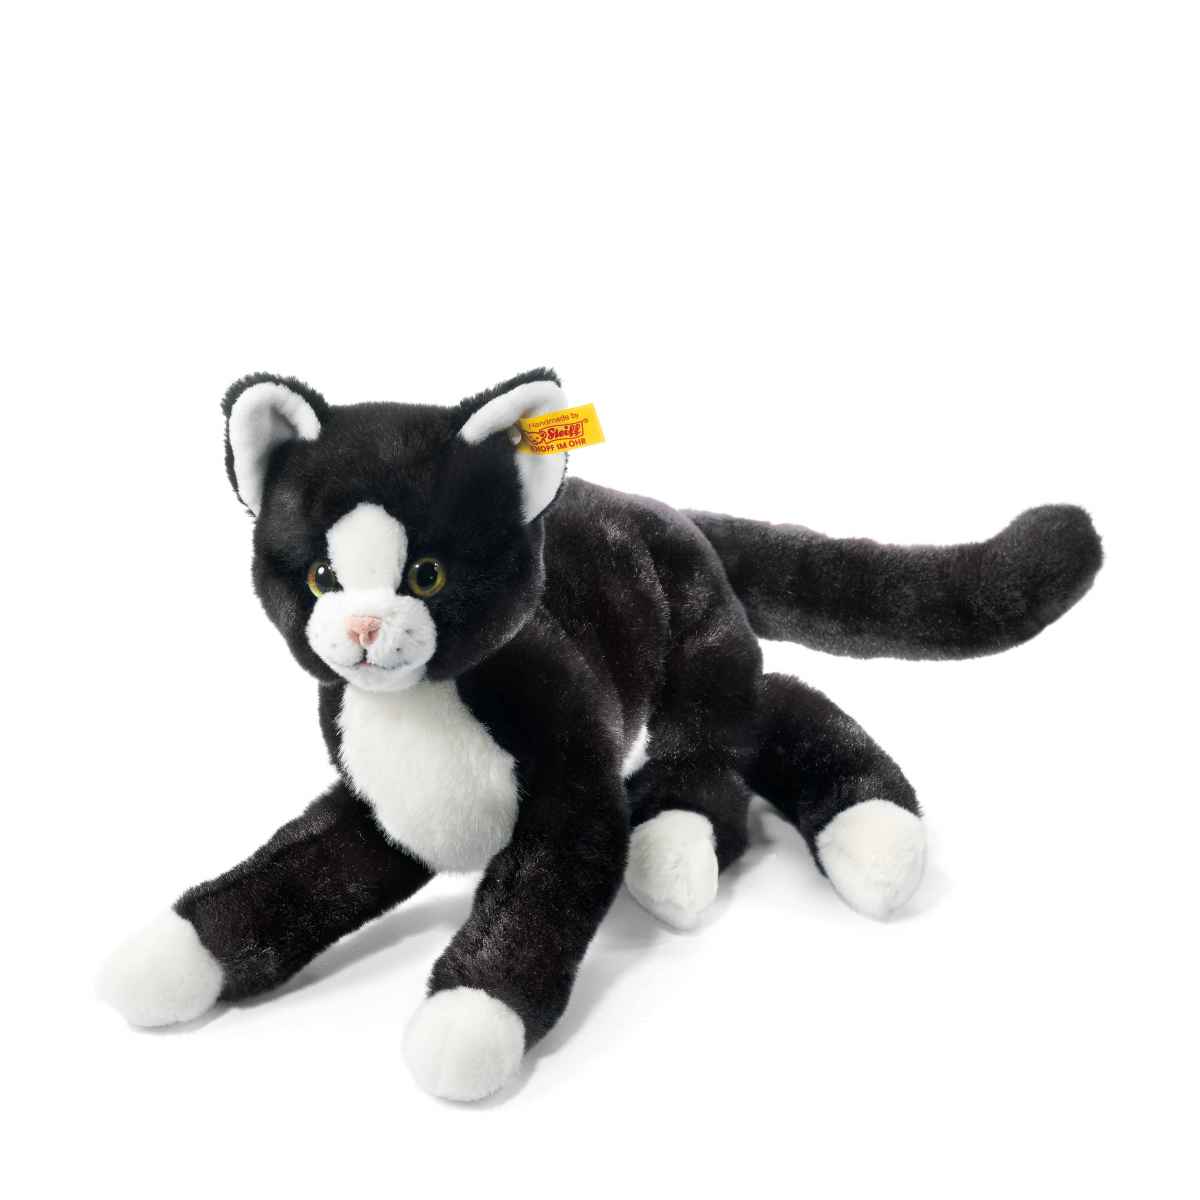 Мягкая игрушка Steiff Mimmi Dangling Cat черно-белый мягкая игрушка steiff mimmi dangling cat черно белый